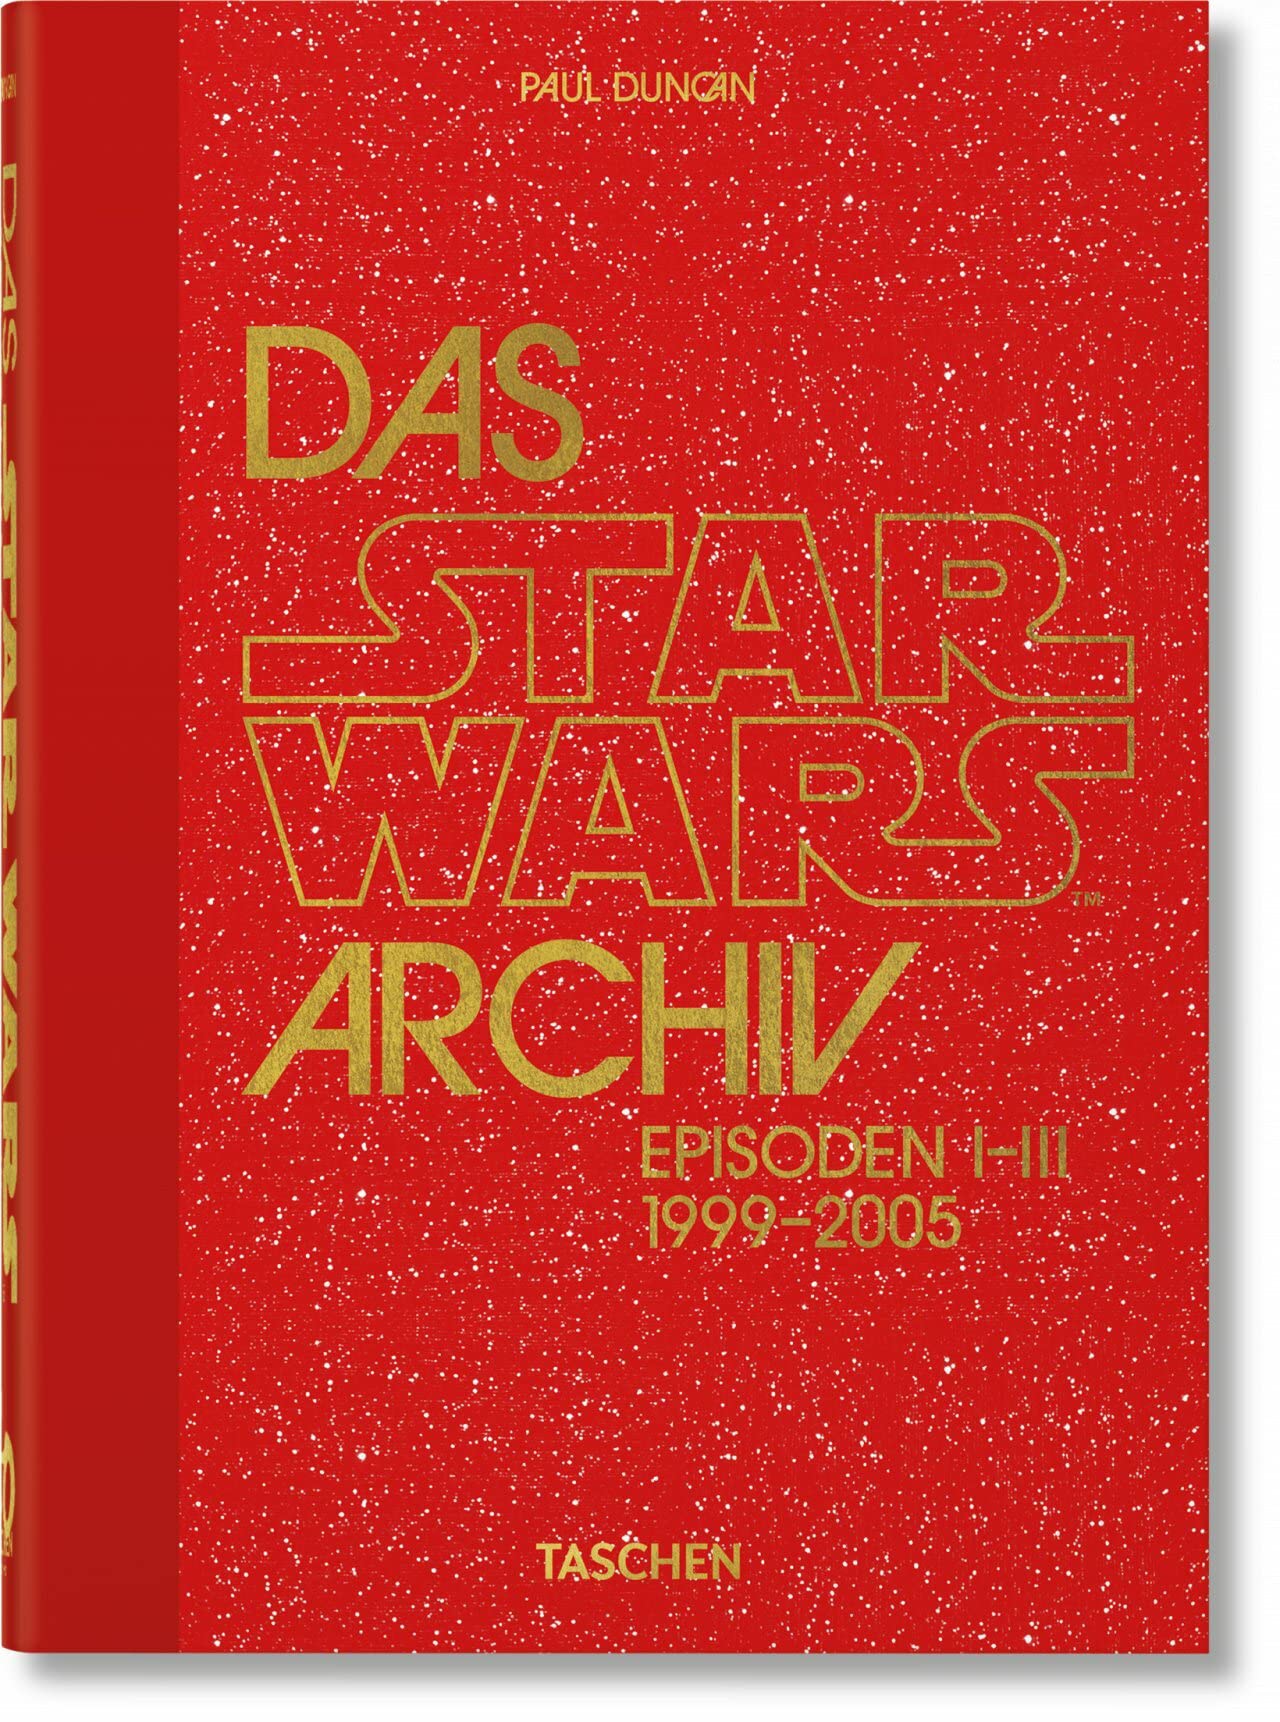 Libri Paul Duncan - Das Star Wars Archiv 1999-2005 (German Edition) NUOVO SIGILLATO, EDIZIONE DEL 30/11/2022 SUBITO DISPONIBILE